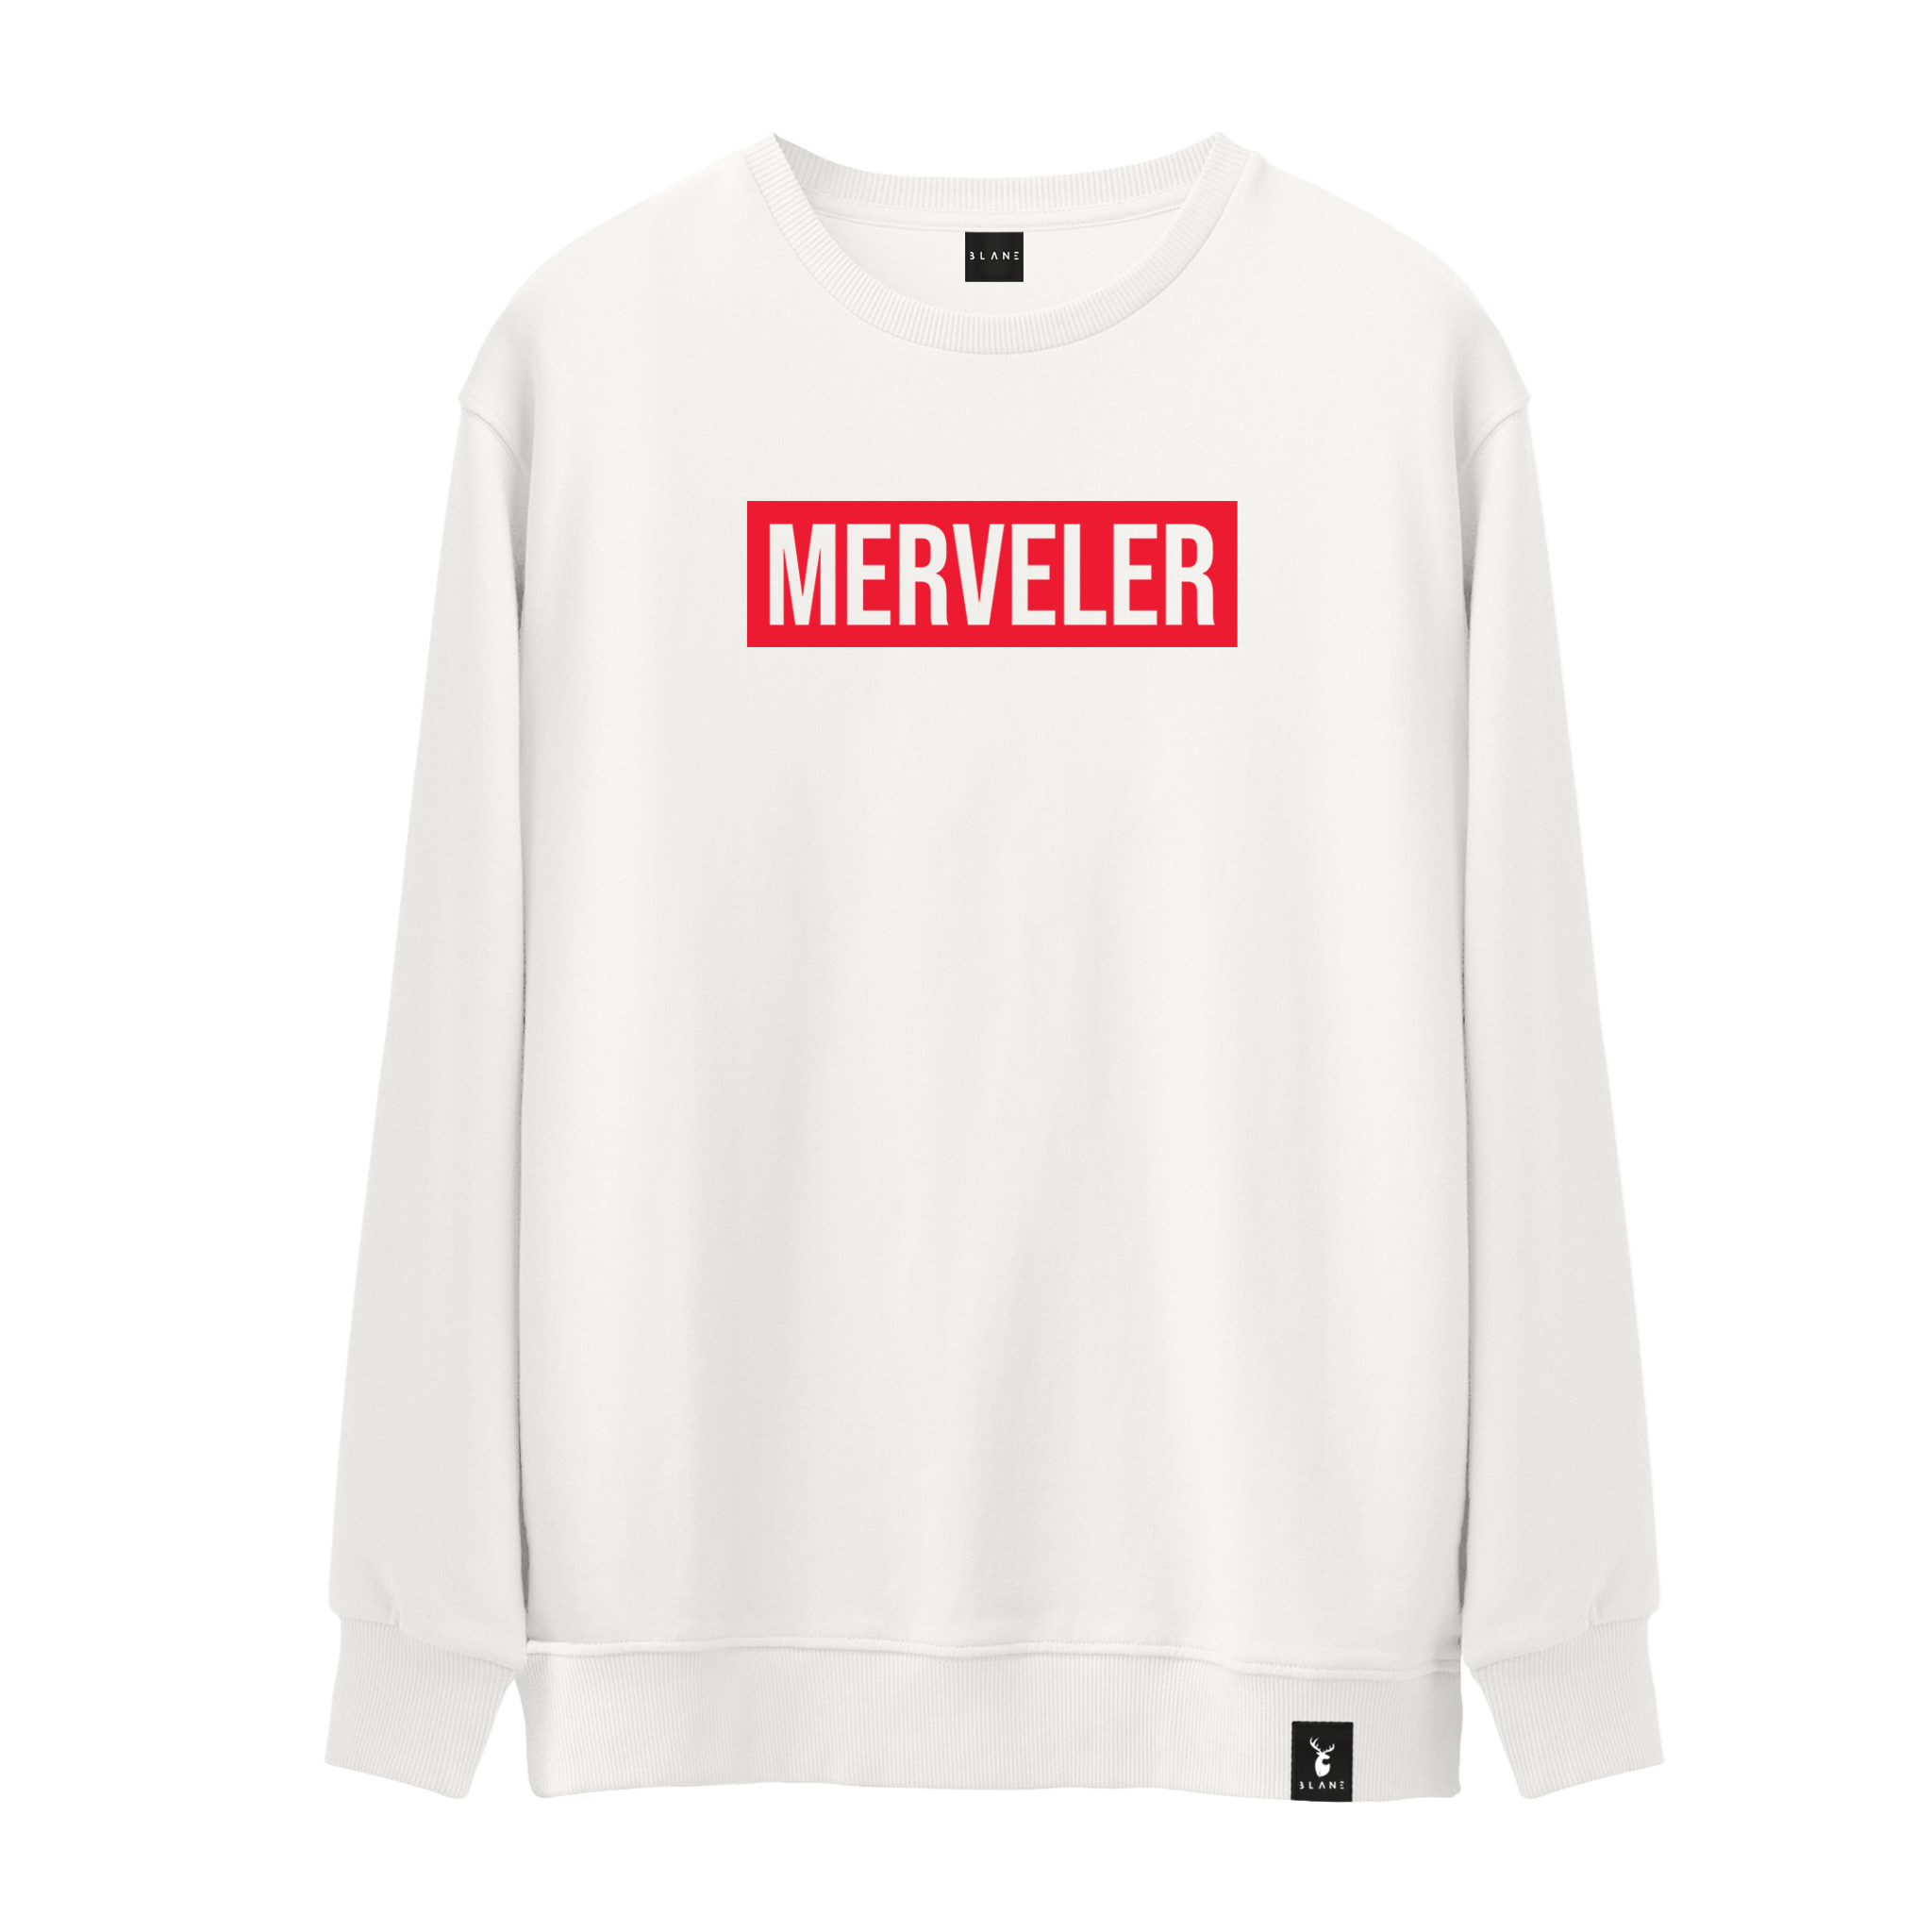 MERVELER - Sweatshirt